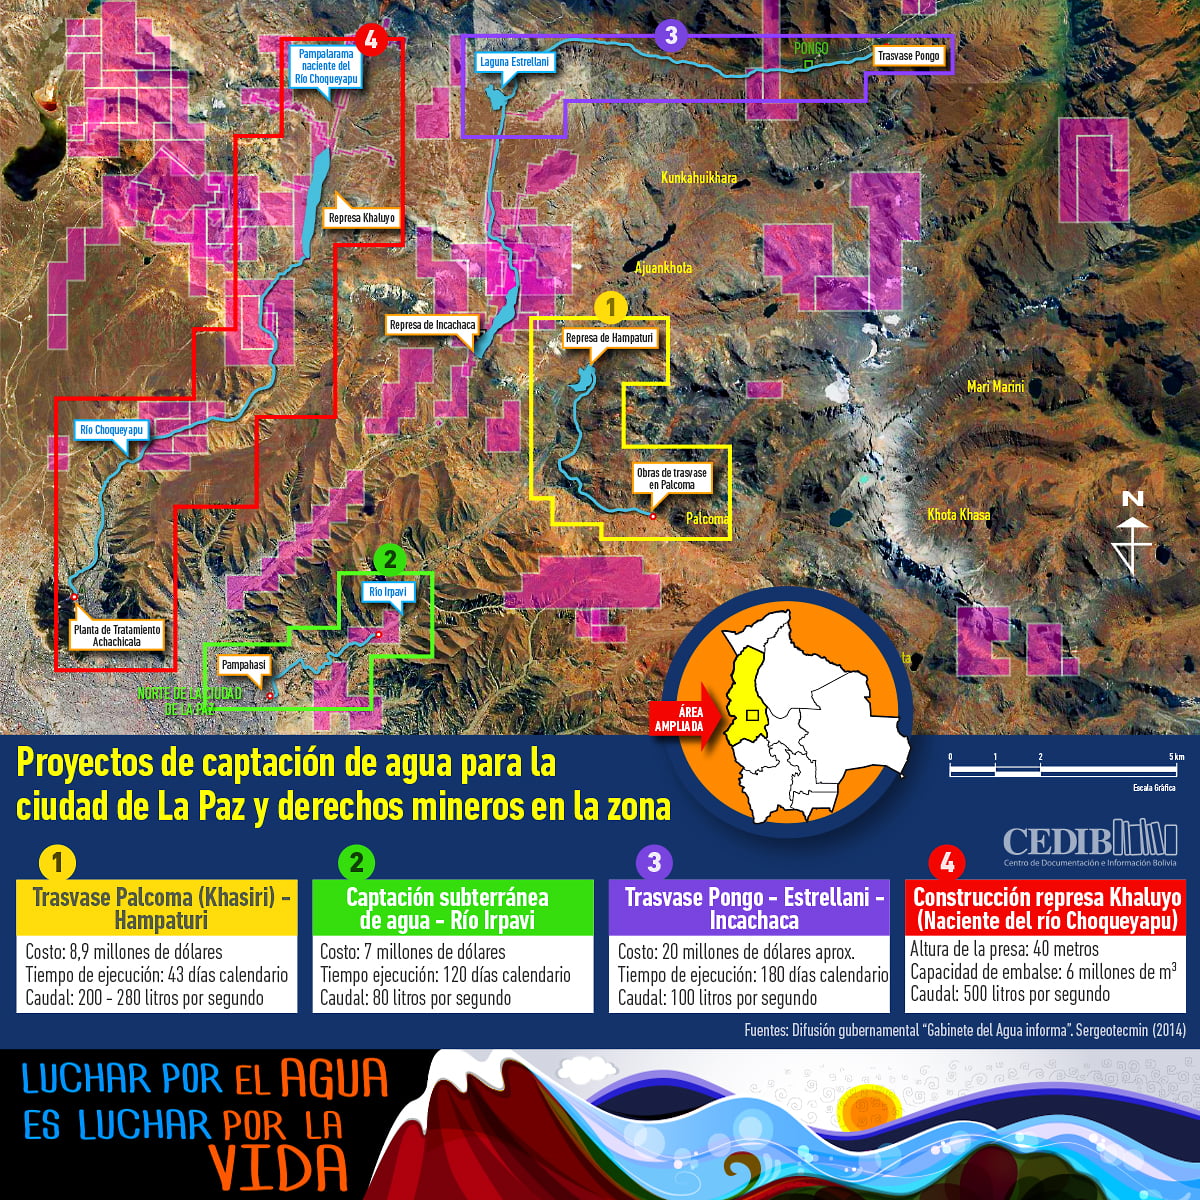 Mapa proyectos de captación de agua en la ciudad de La Paz y derechos mineros en la zona